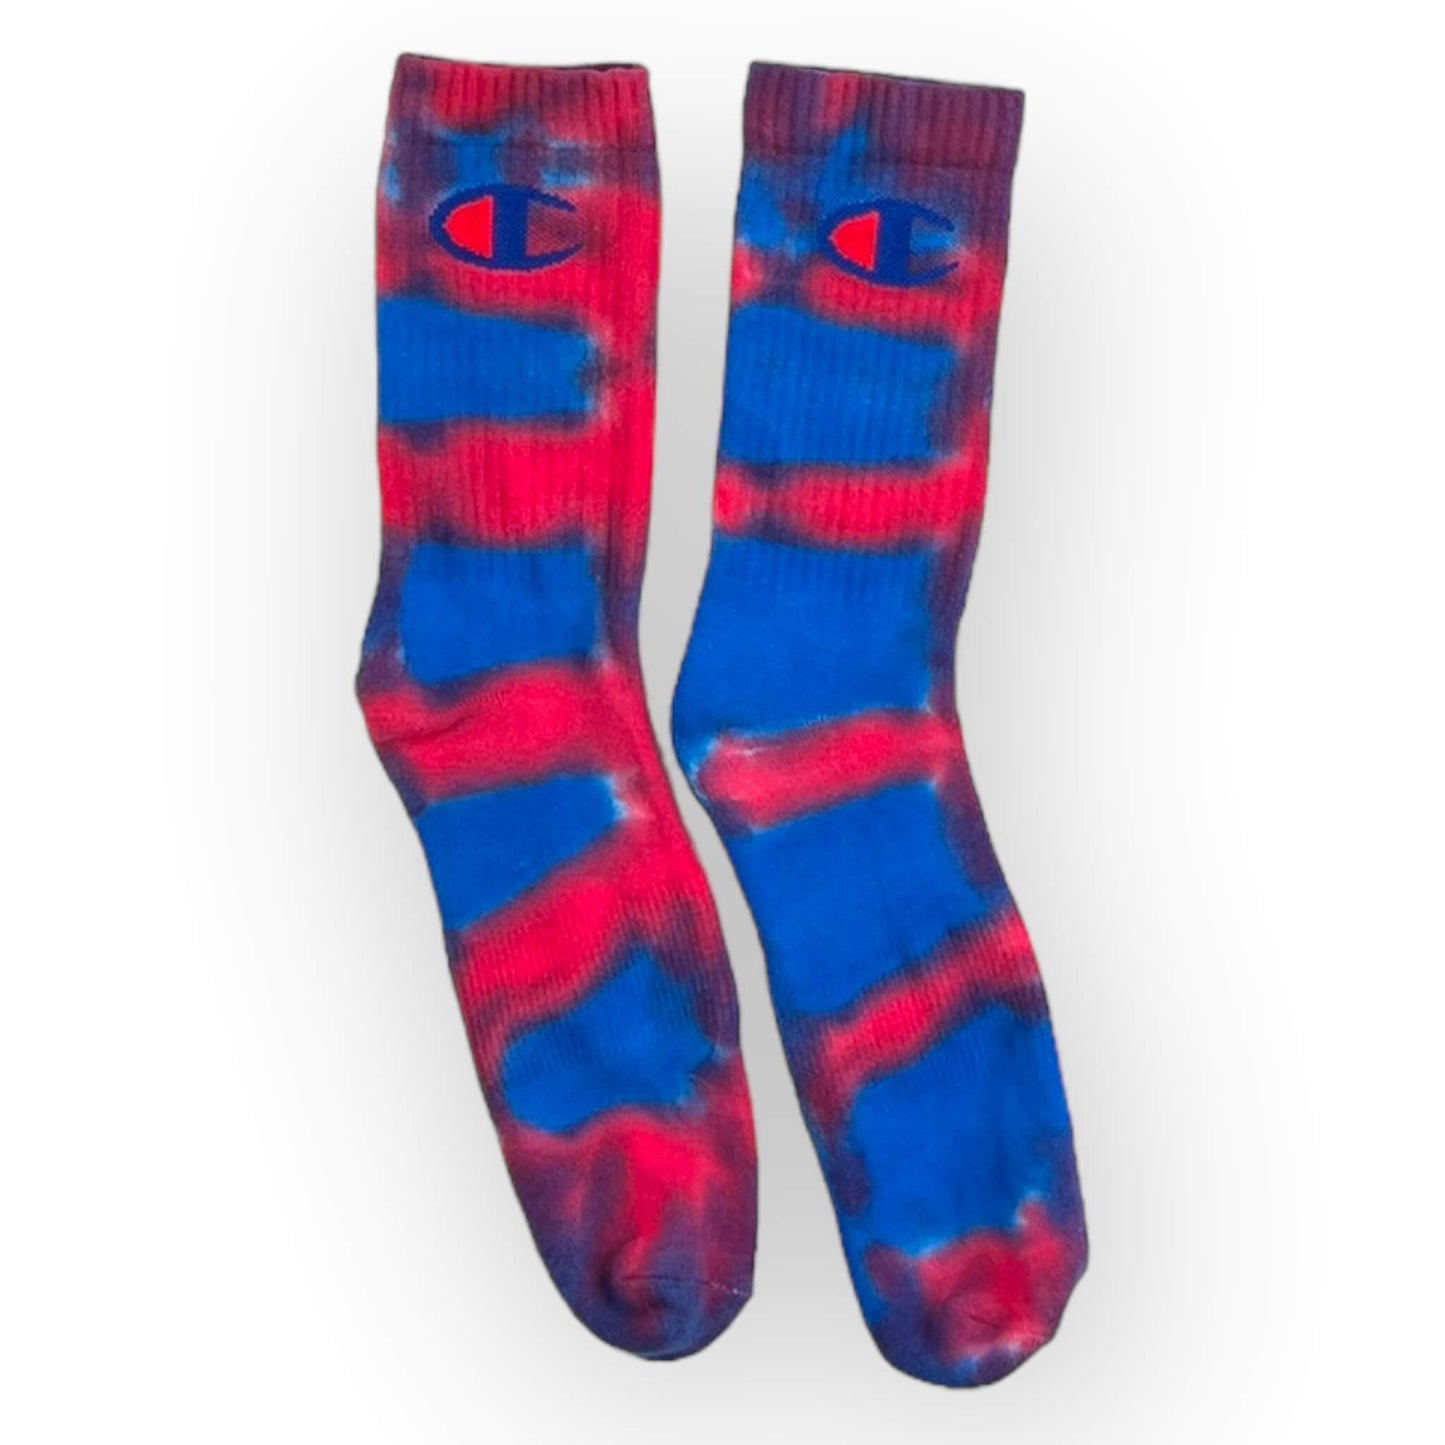 Tie Dye Socks - Adult Size 11-14